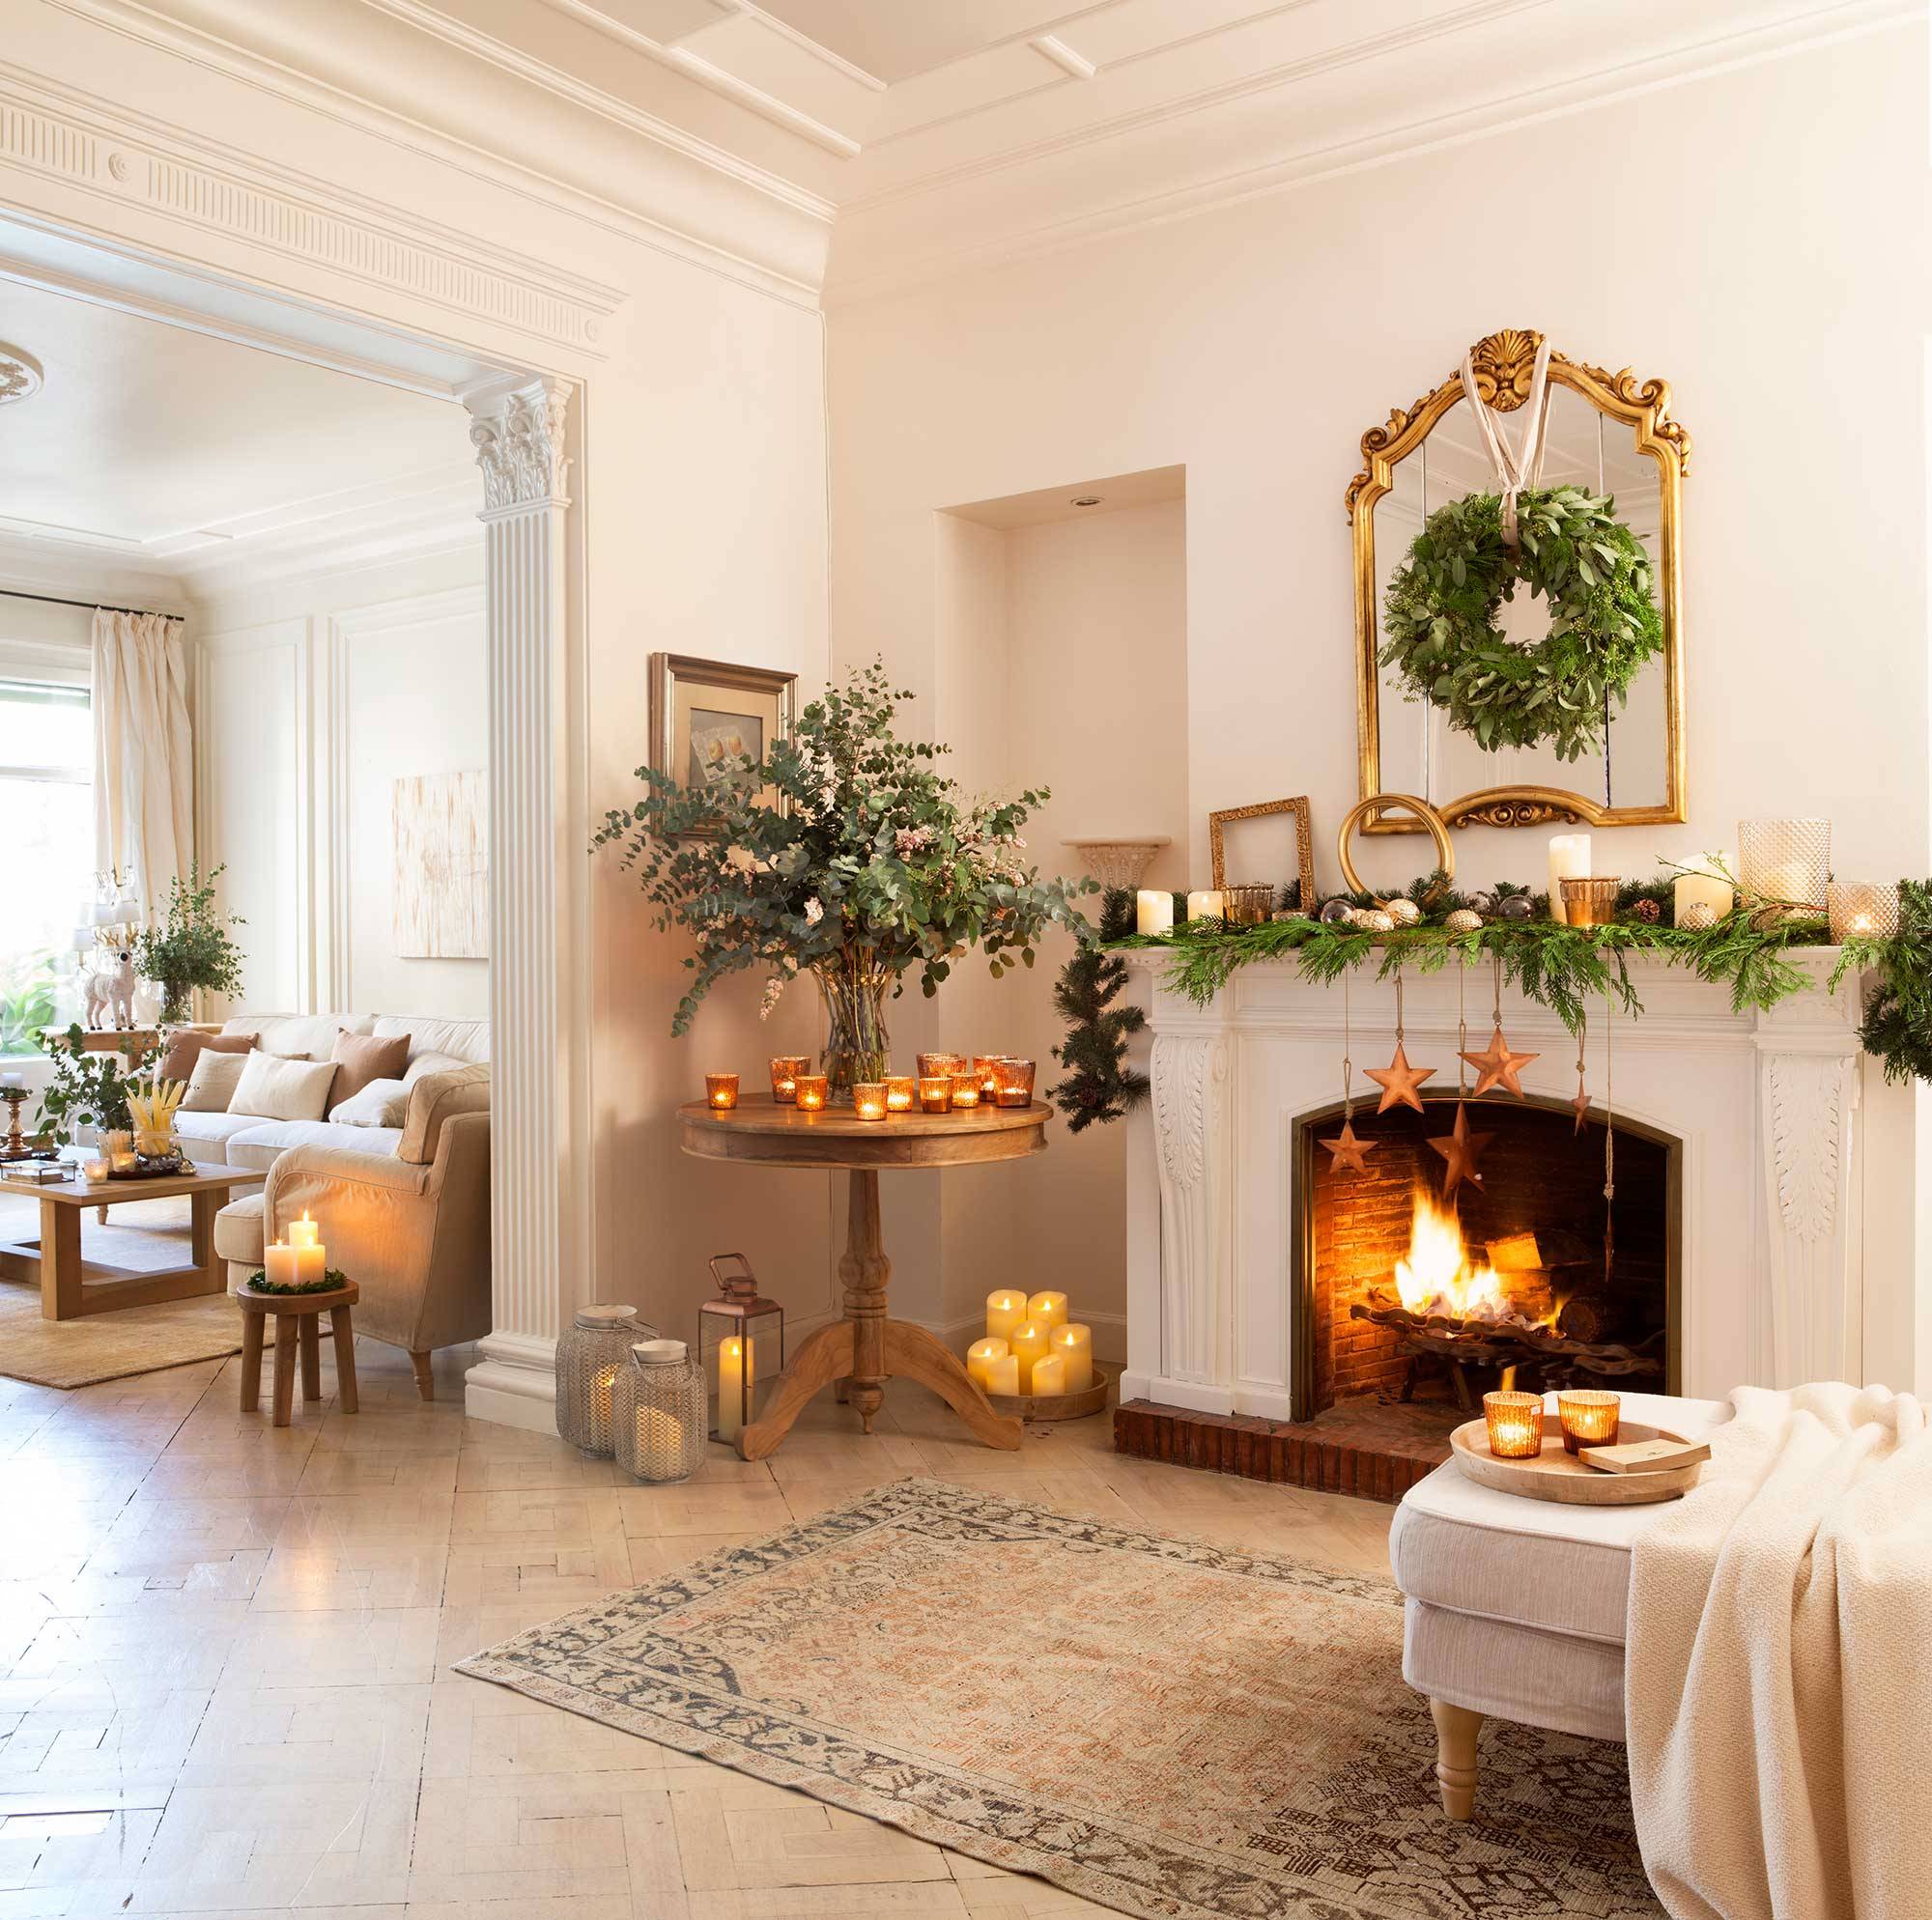 Salón con chimenea decorado de Navidad con muchas velas 00417895